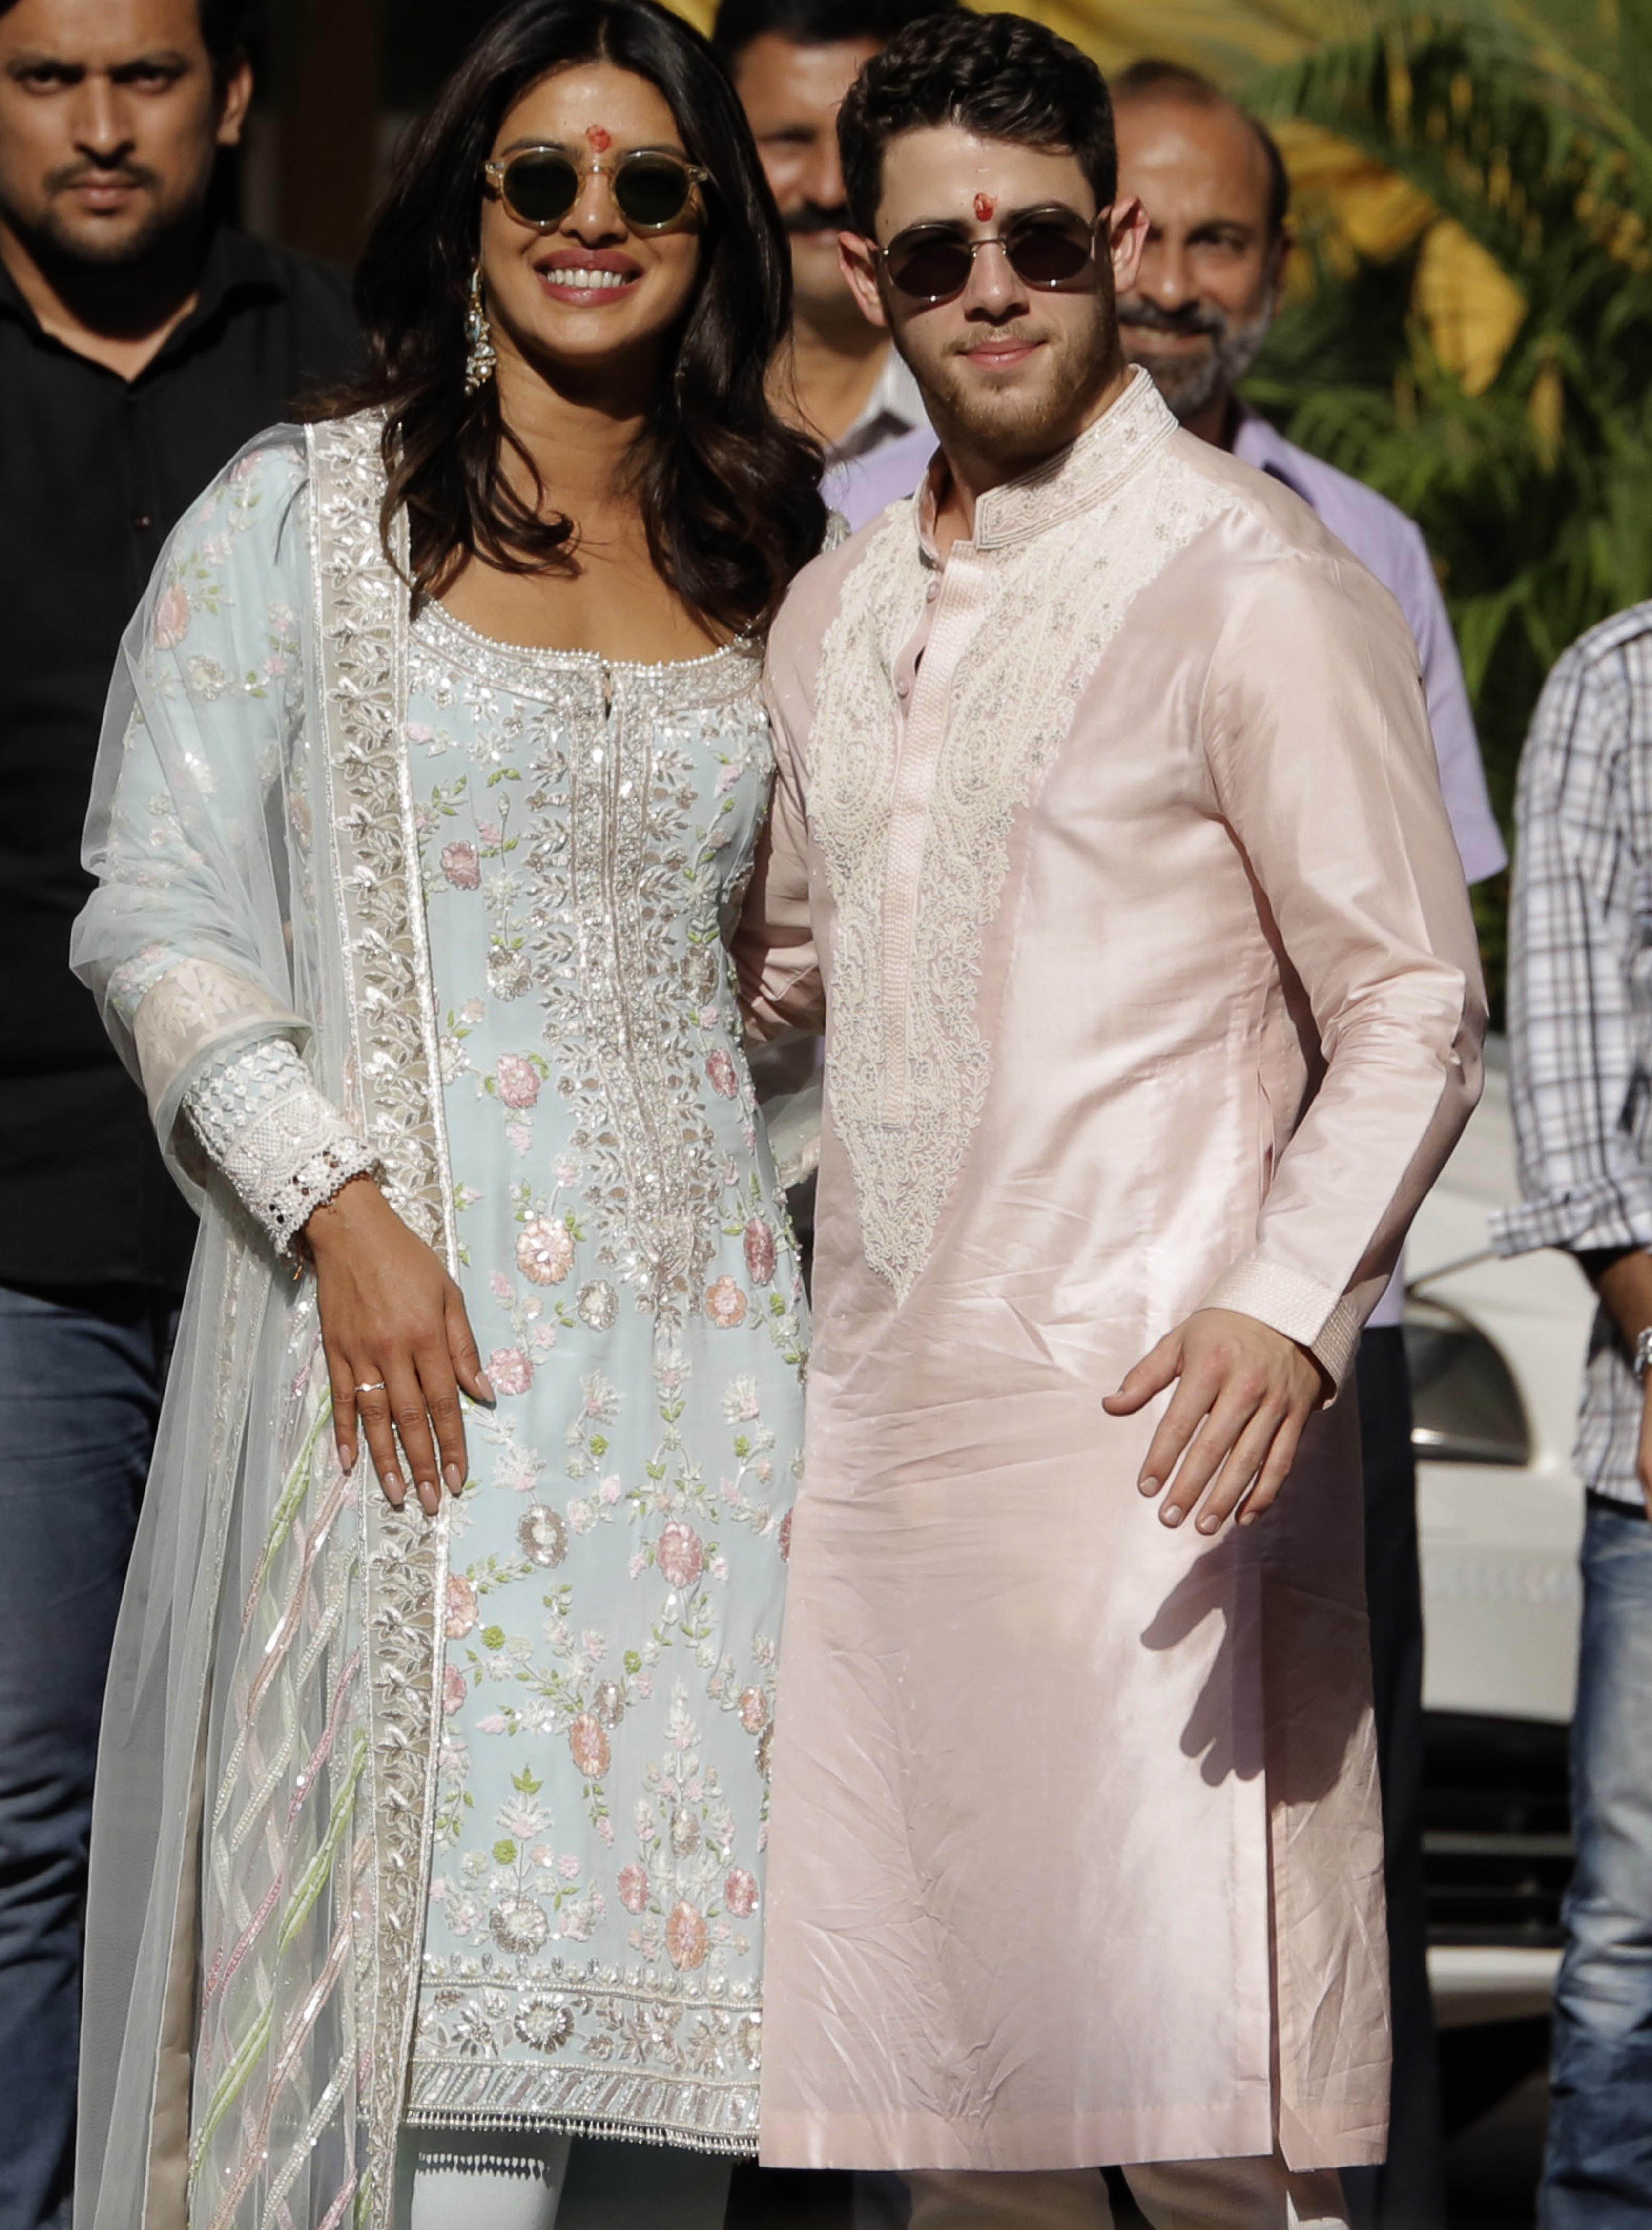 Nick Jonas usa vestes tradicionais indianas em pré-casamento com Priyanka Chopra